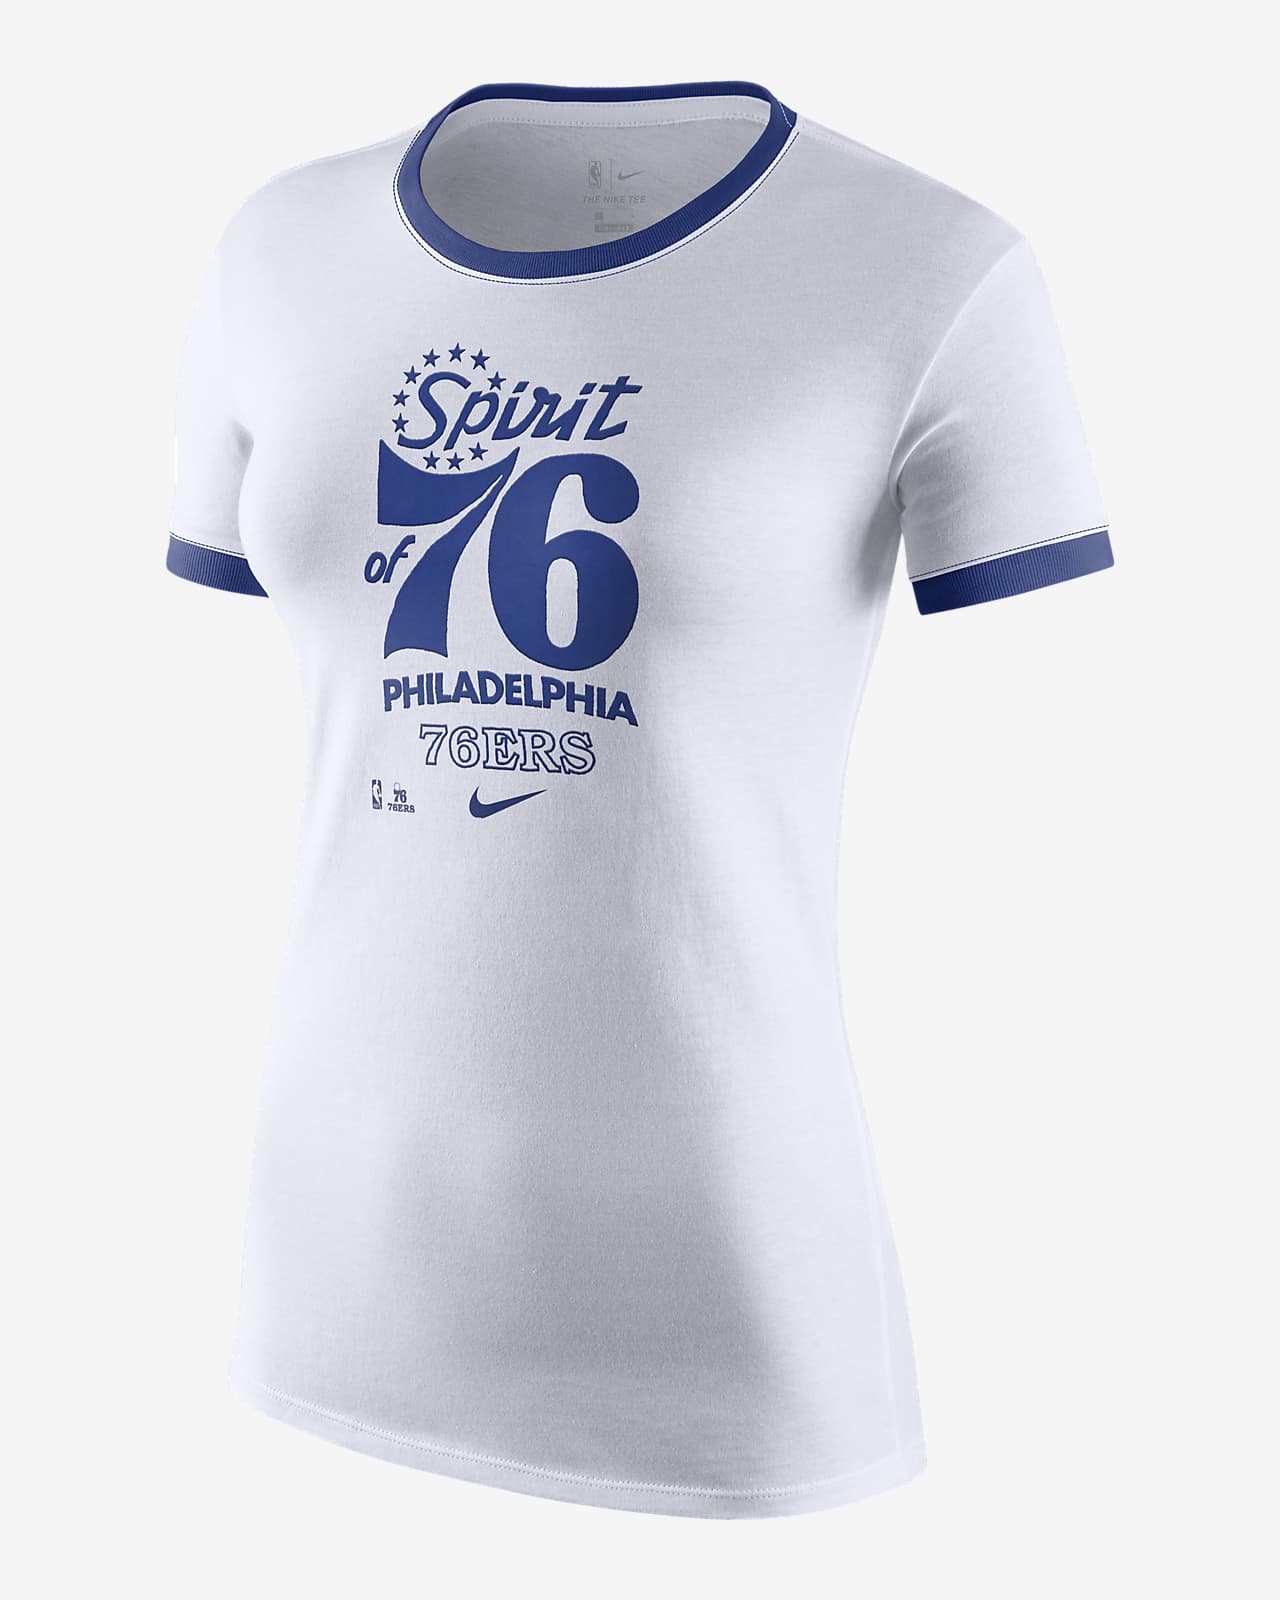 women's 76ers shirt